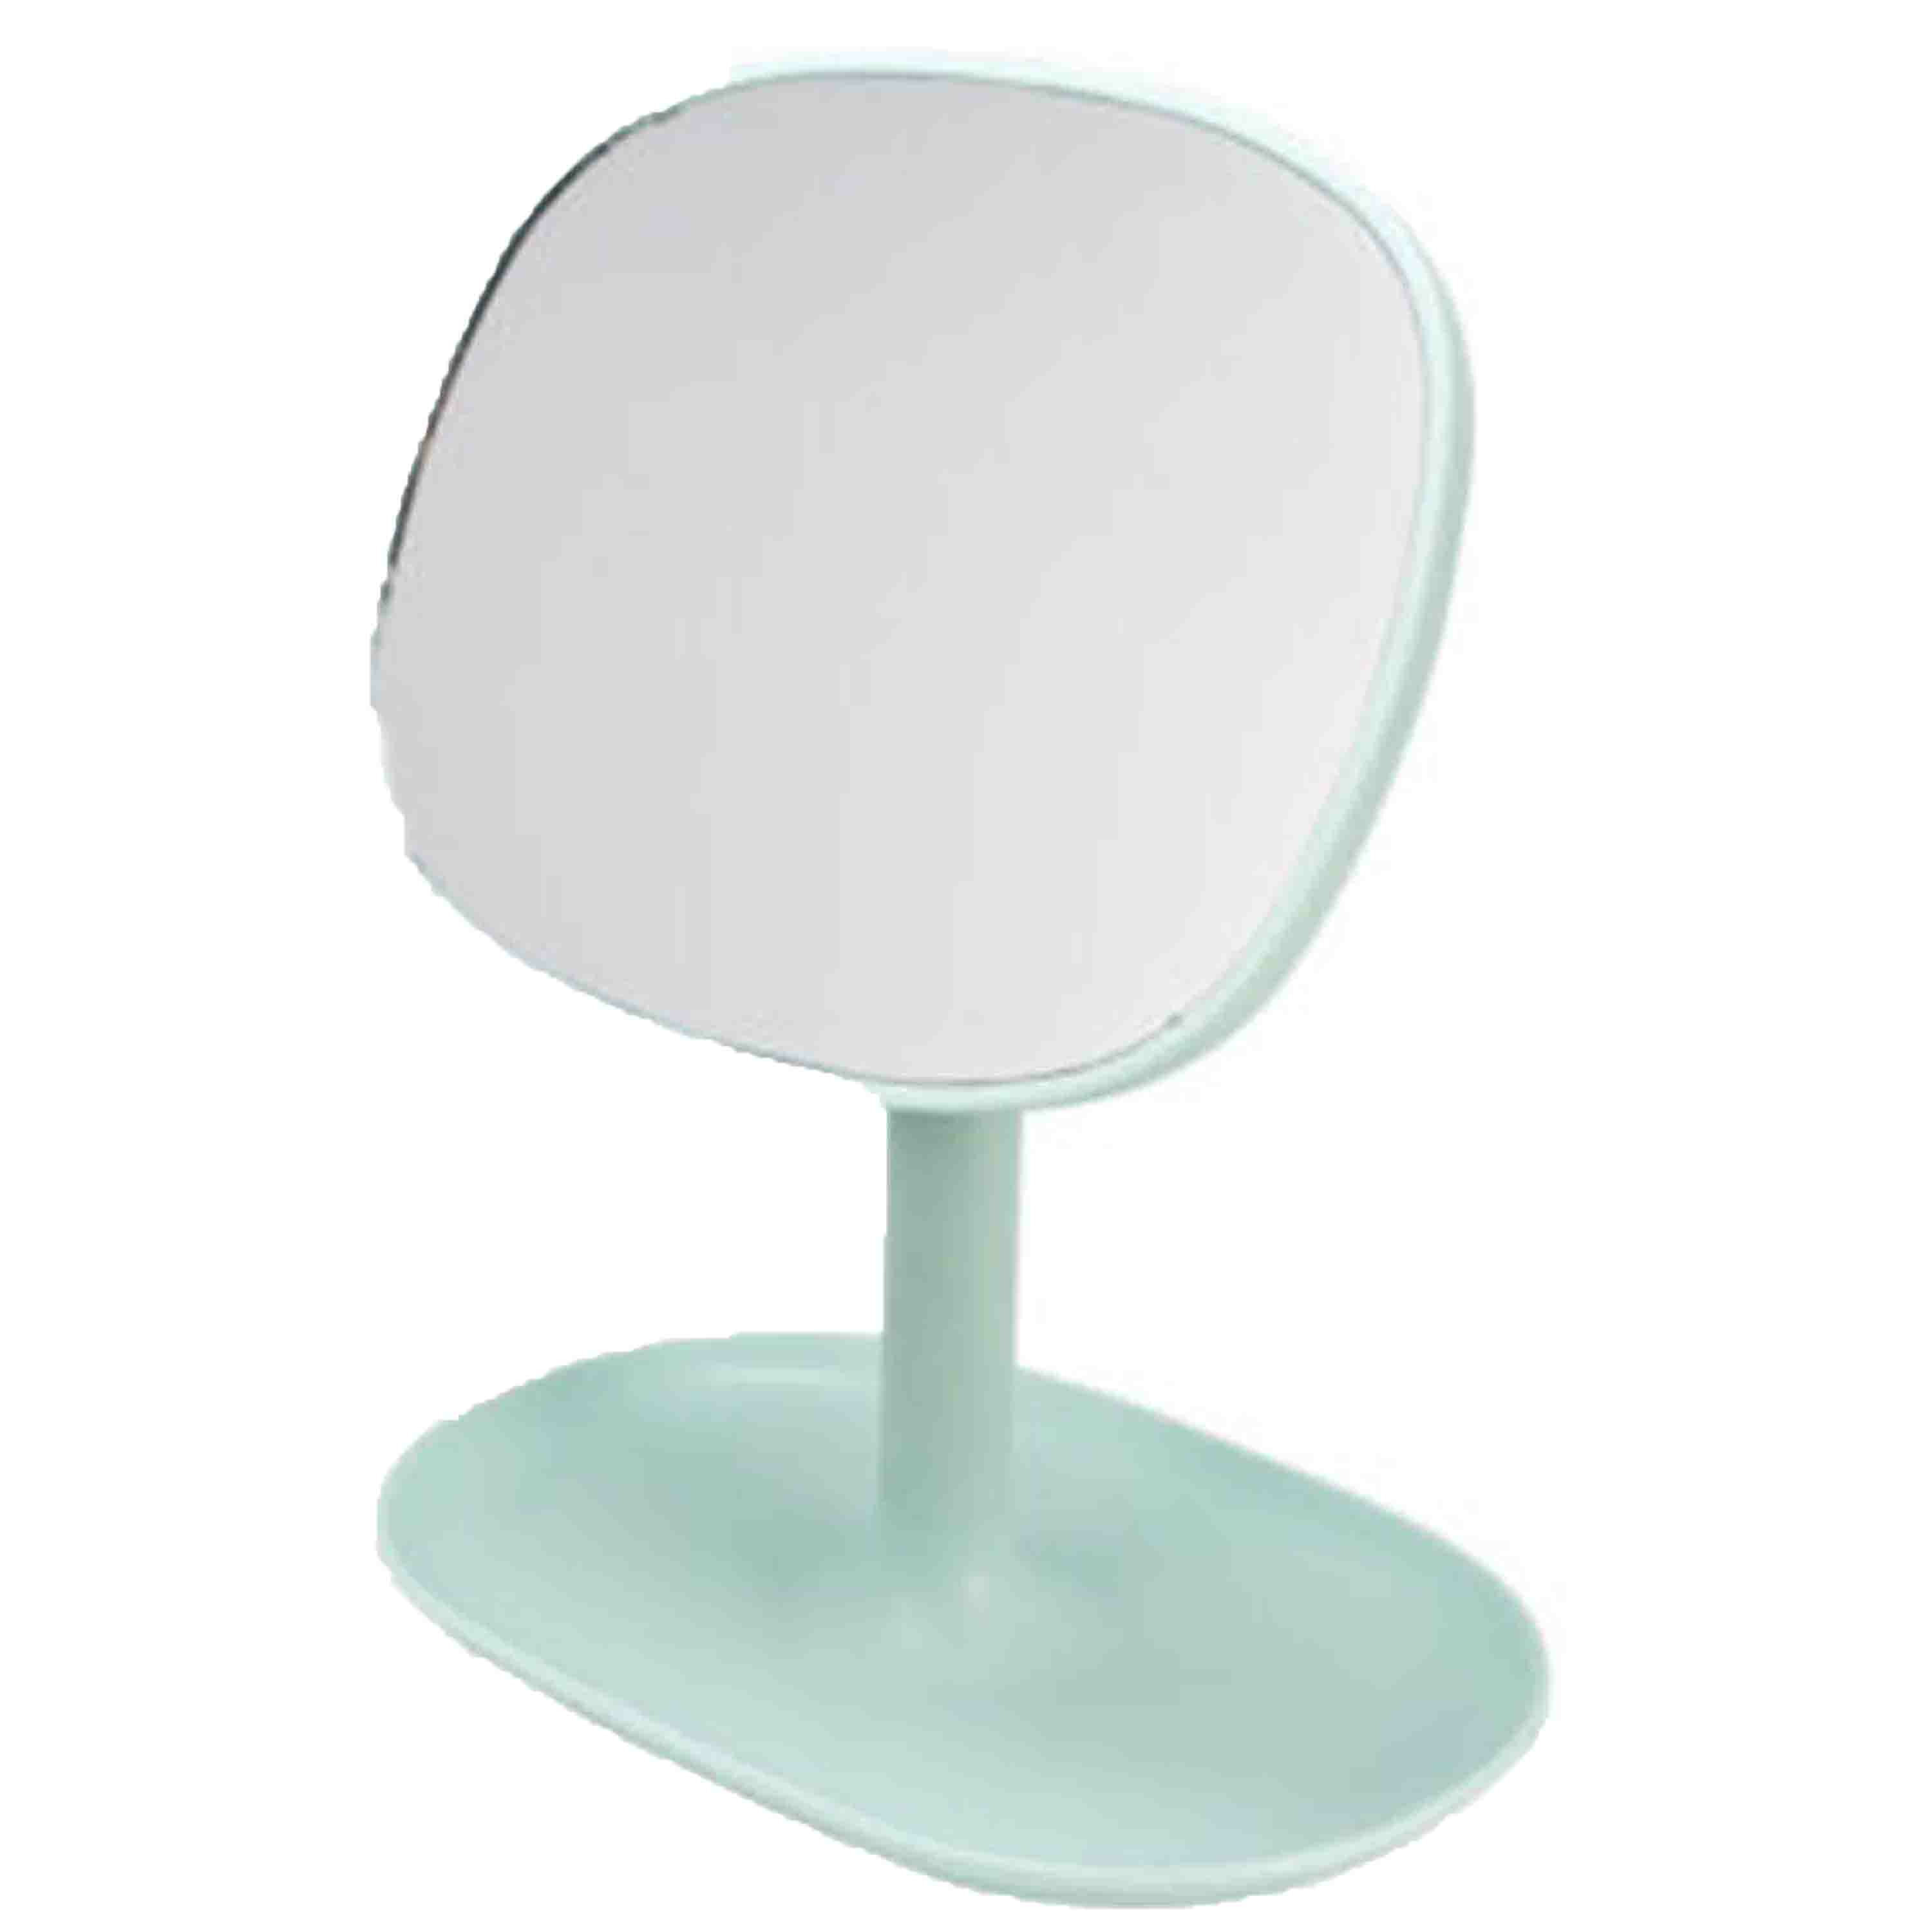 Svenska Living Make-up spiegel/scheerspiegel op voet - 15 x 11,5 cm - mintgroen -